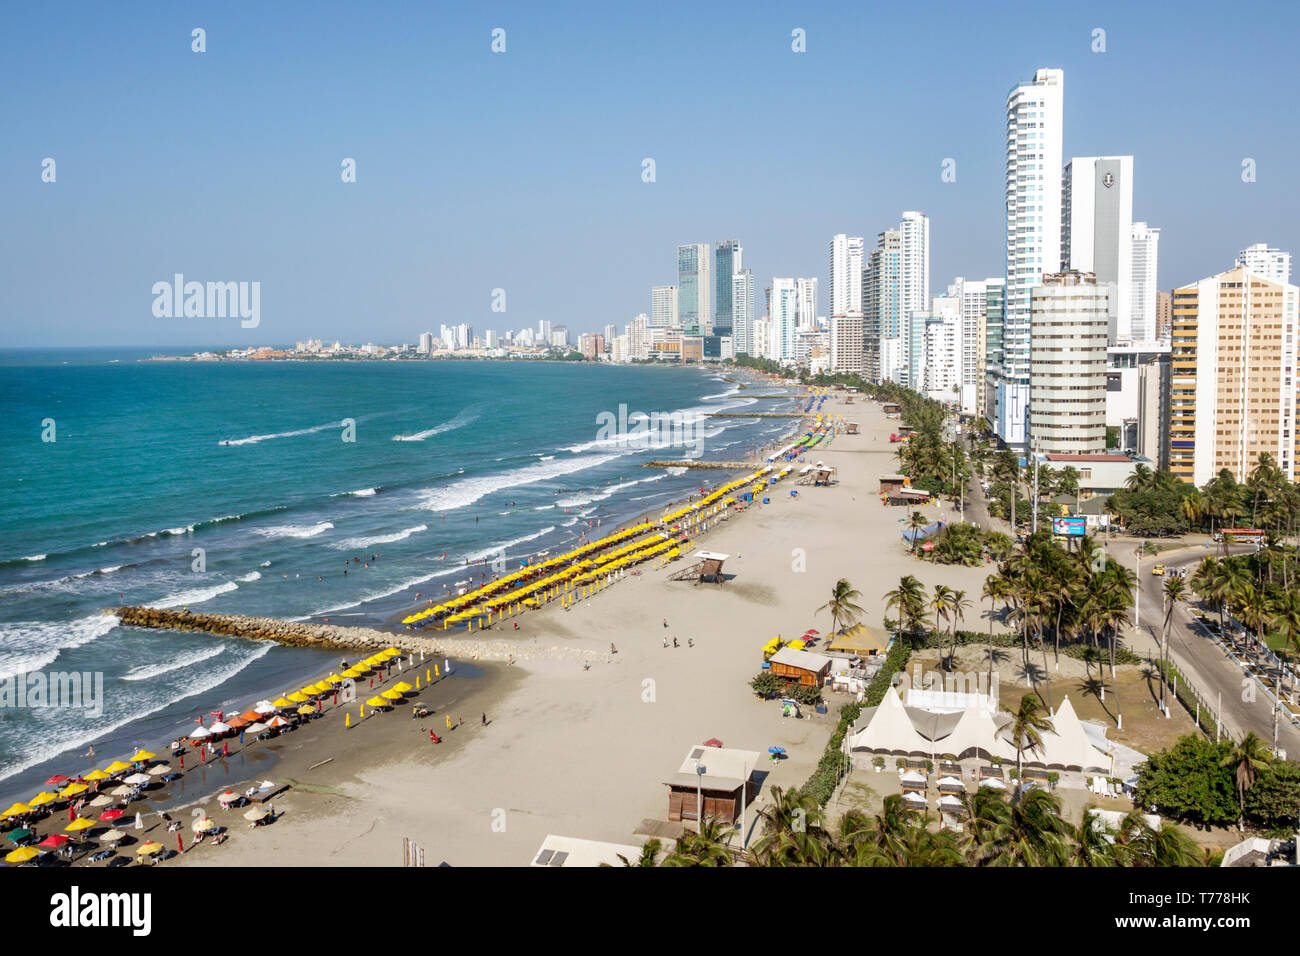 Cartagena Colombia, Bocagrande, Mar Caribe, playa pública arena agua alquiler sombrillas, horizonte de la ciudad edificios altos frente al mar costa,COL19012411 Foto de stock